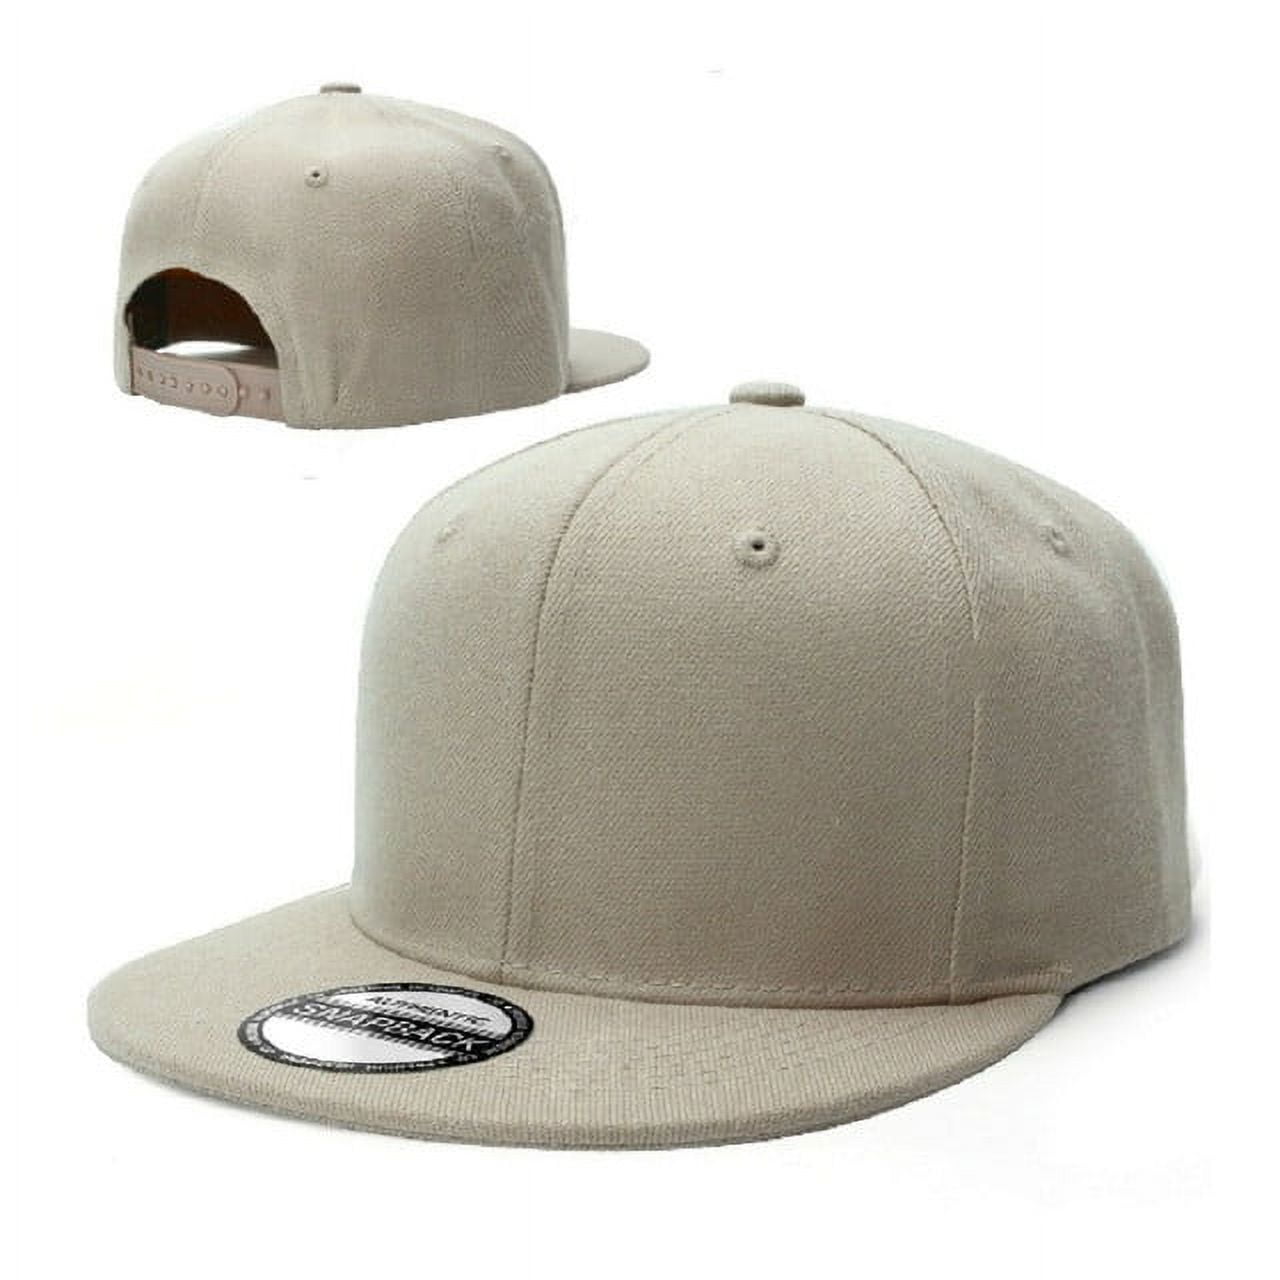 Oblack Baseball Caps Mens Trucker Cap Classic Beige Baseball Cap Adjustable Hats Men Mesh Snapback Caps For Men Accessories Hat Men S Hats Caps